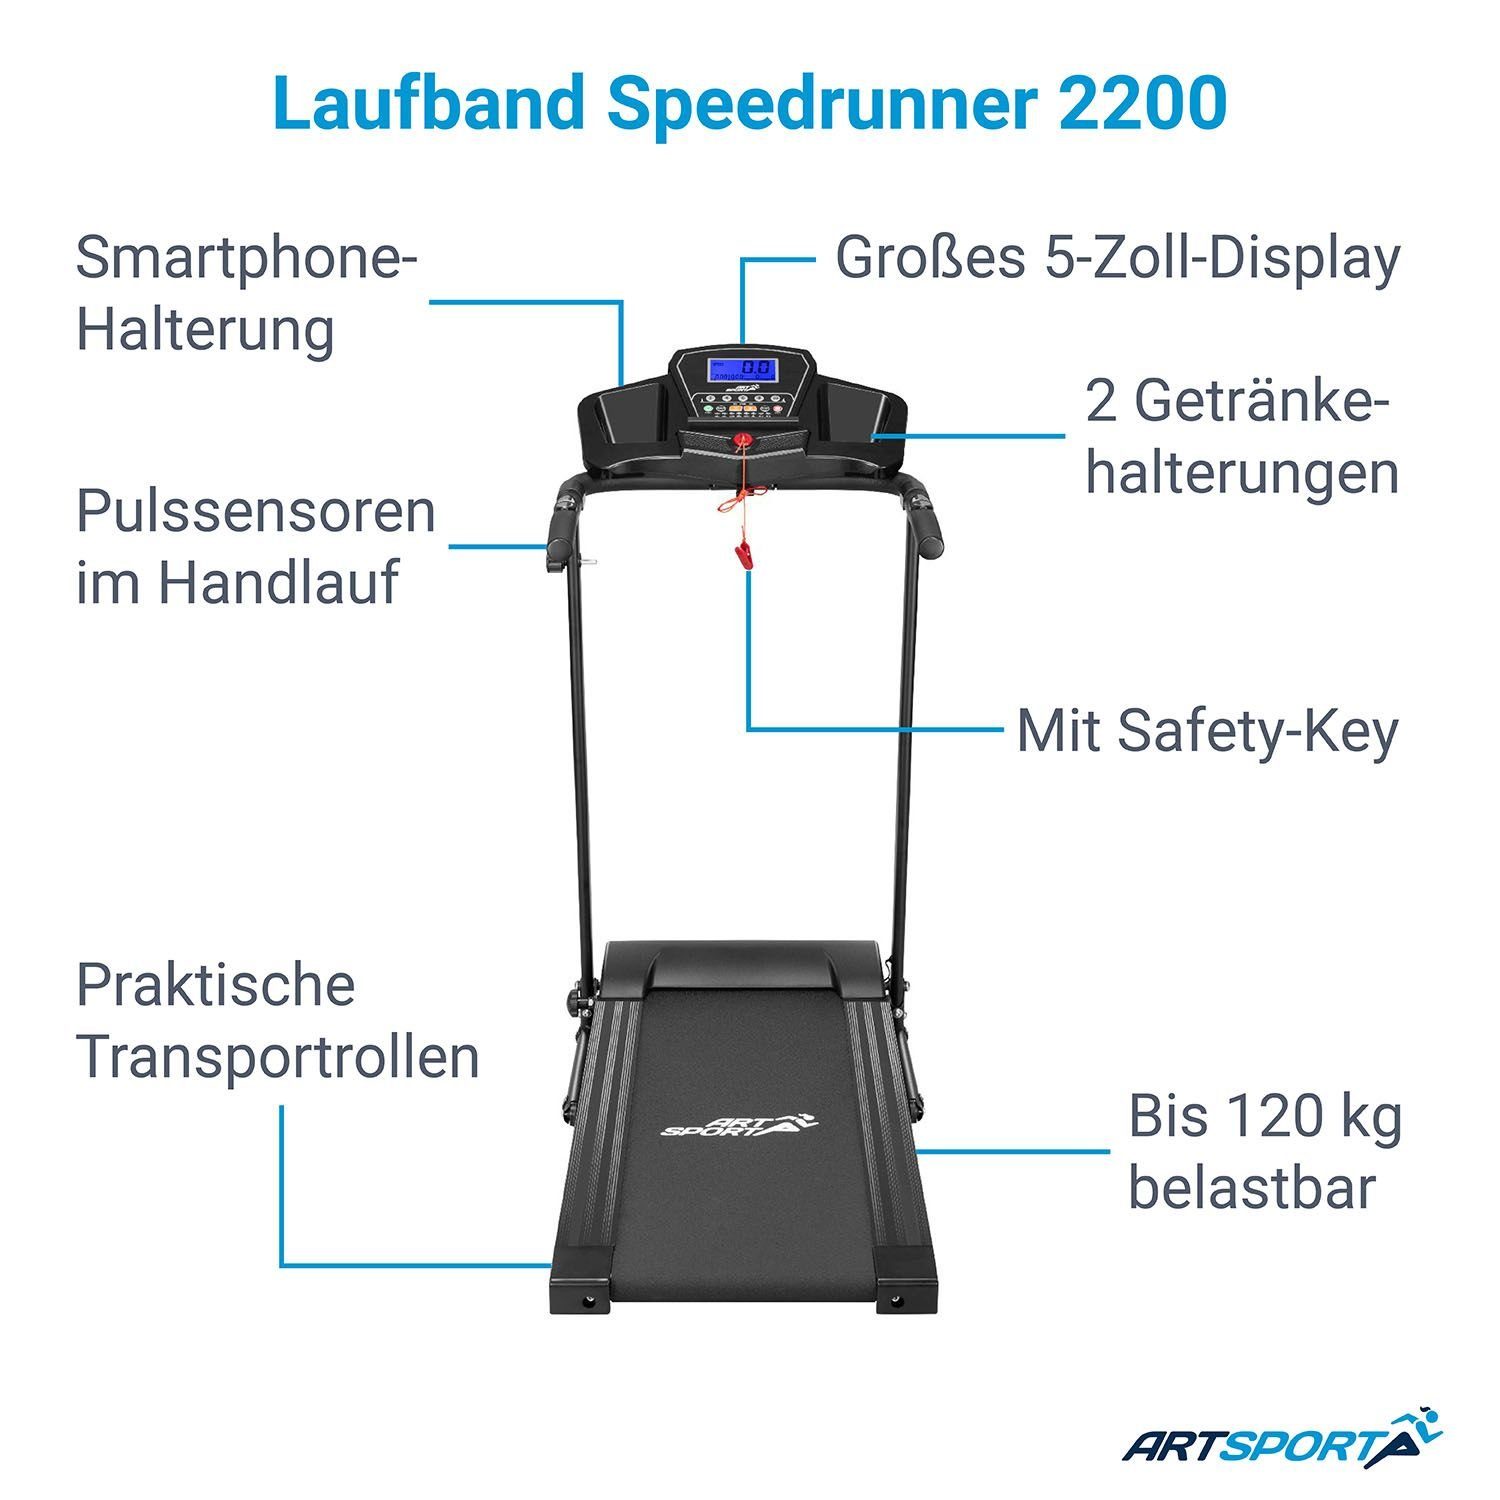 Key, ArtSport große 2200, Smartphone-Halterung, Laufband Safety Speedrunner mit Klappfunktion Lauffläche,